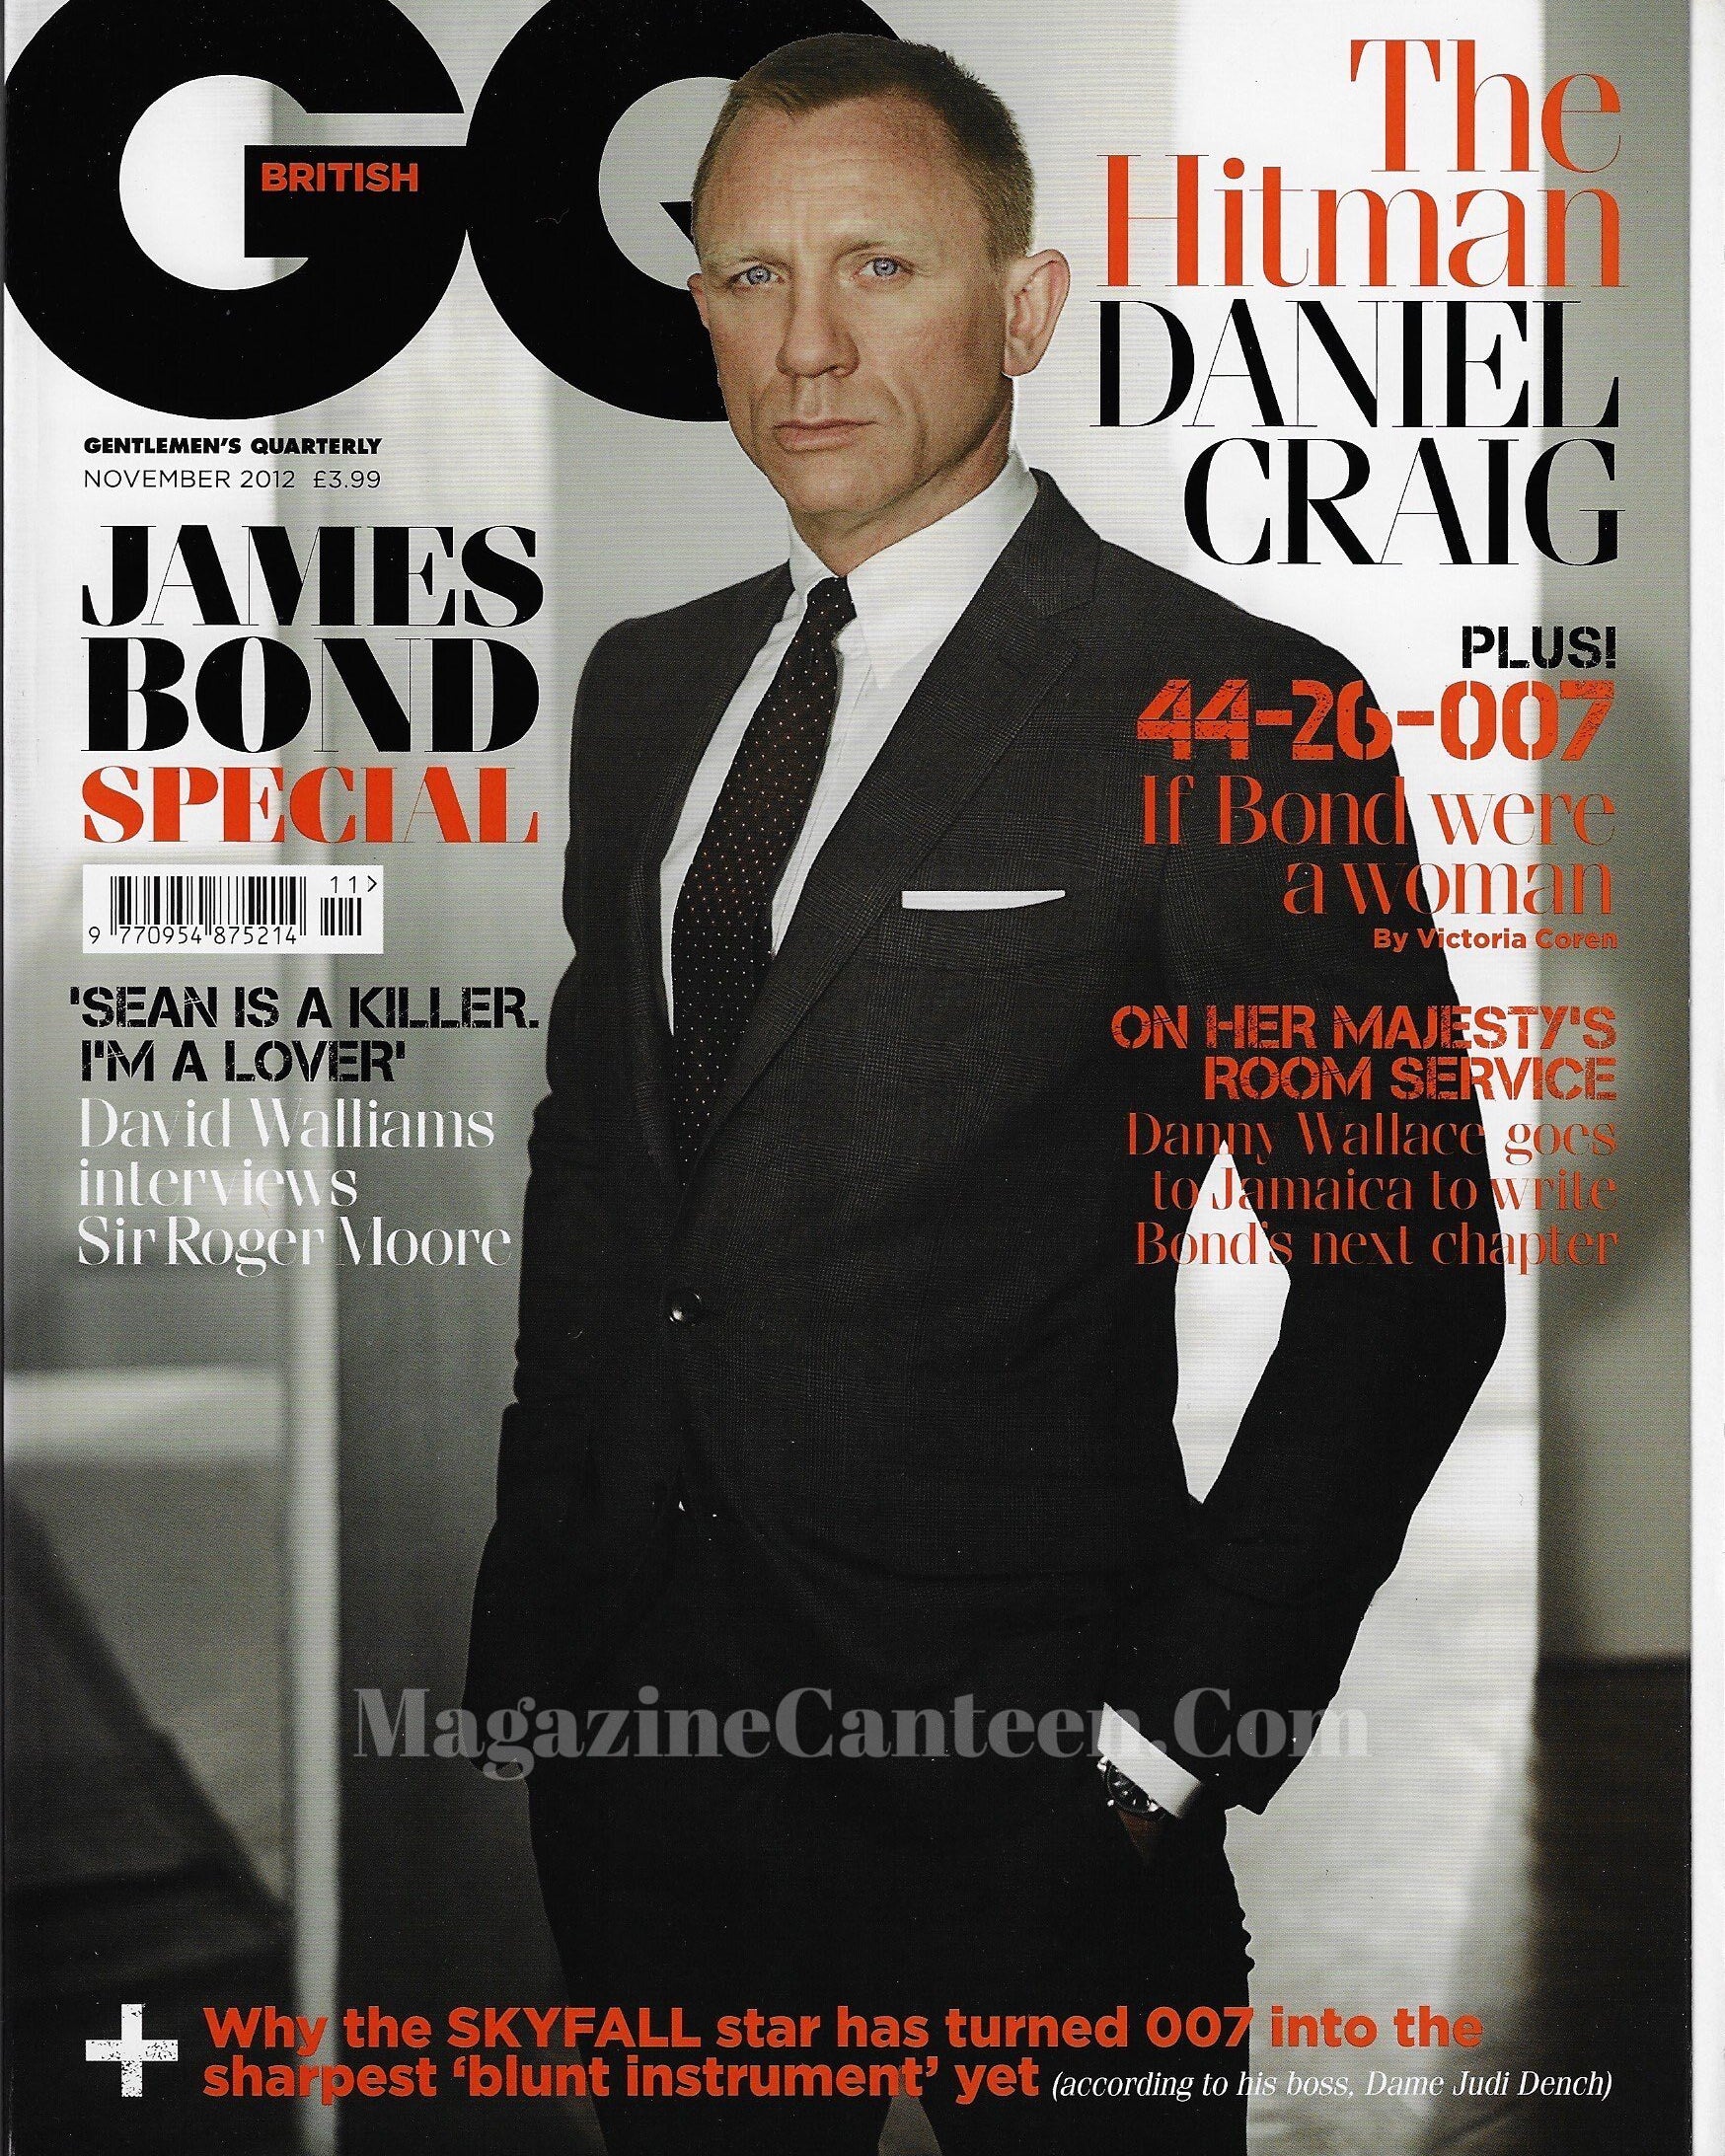 GQ Magazine November 2012 - Daniel Craig James Bond